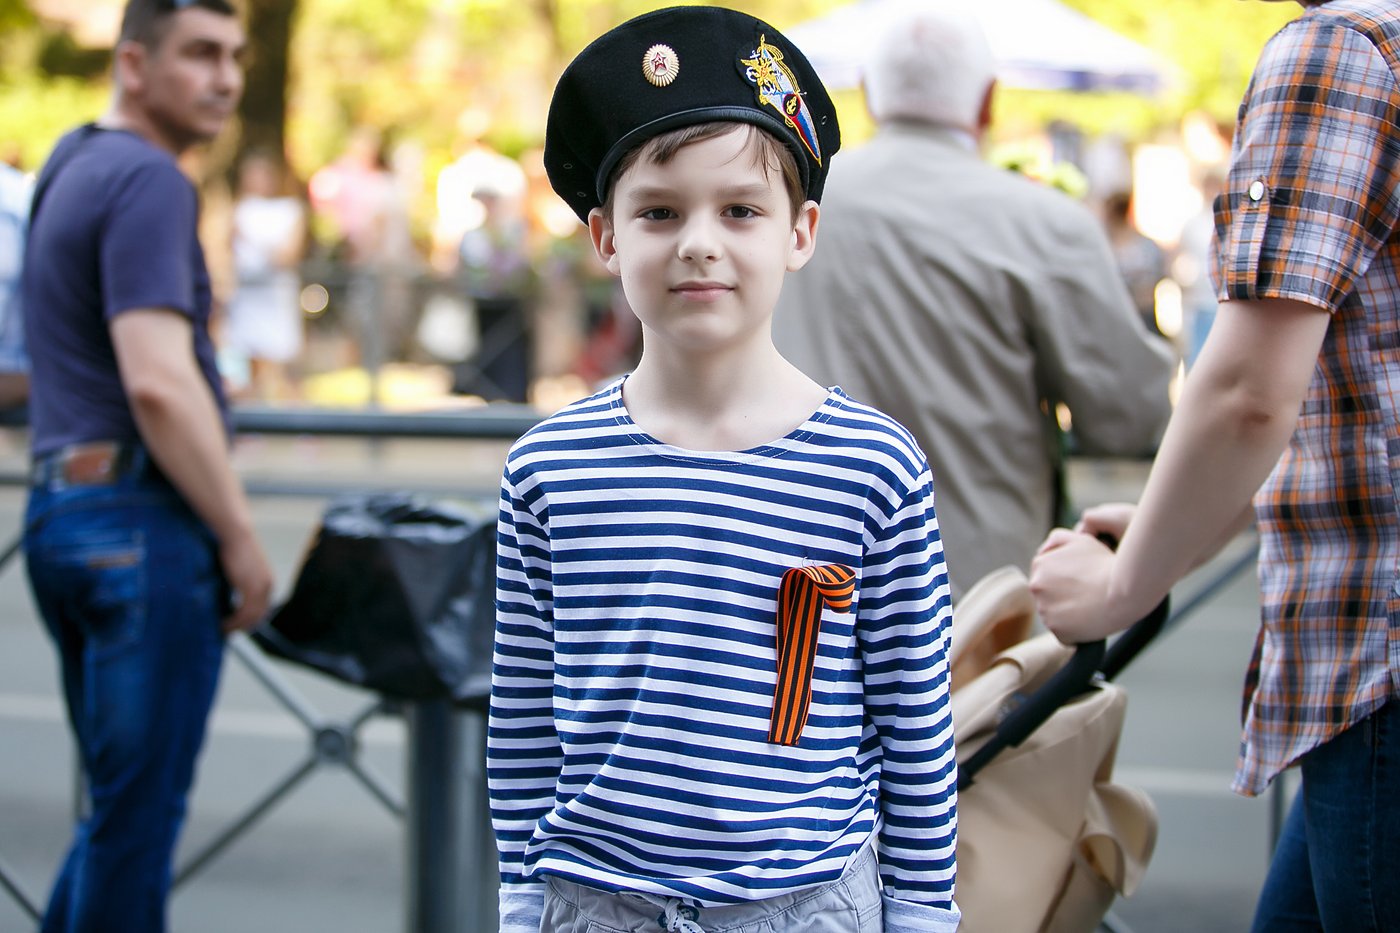 Никита Анищенко, 9 лет:- Мы ходим на парад каждый год. Но так оделся я только в этом году, дедушка с бабушкой нашли форму. Чтобы поздравить родных, я делаю рисунки. На этот раз нарисовал победу. Может быть, когда вырасту, стану военным, чтобы тоже защищать Родину. 